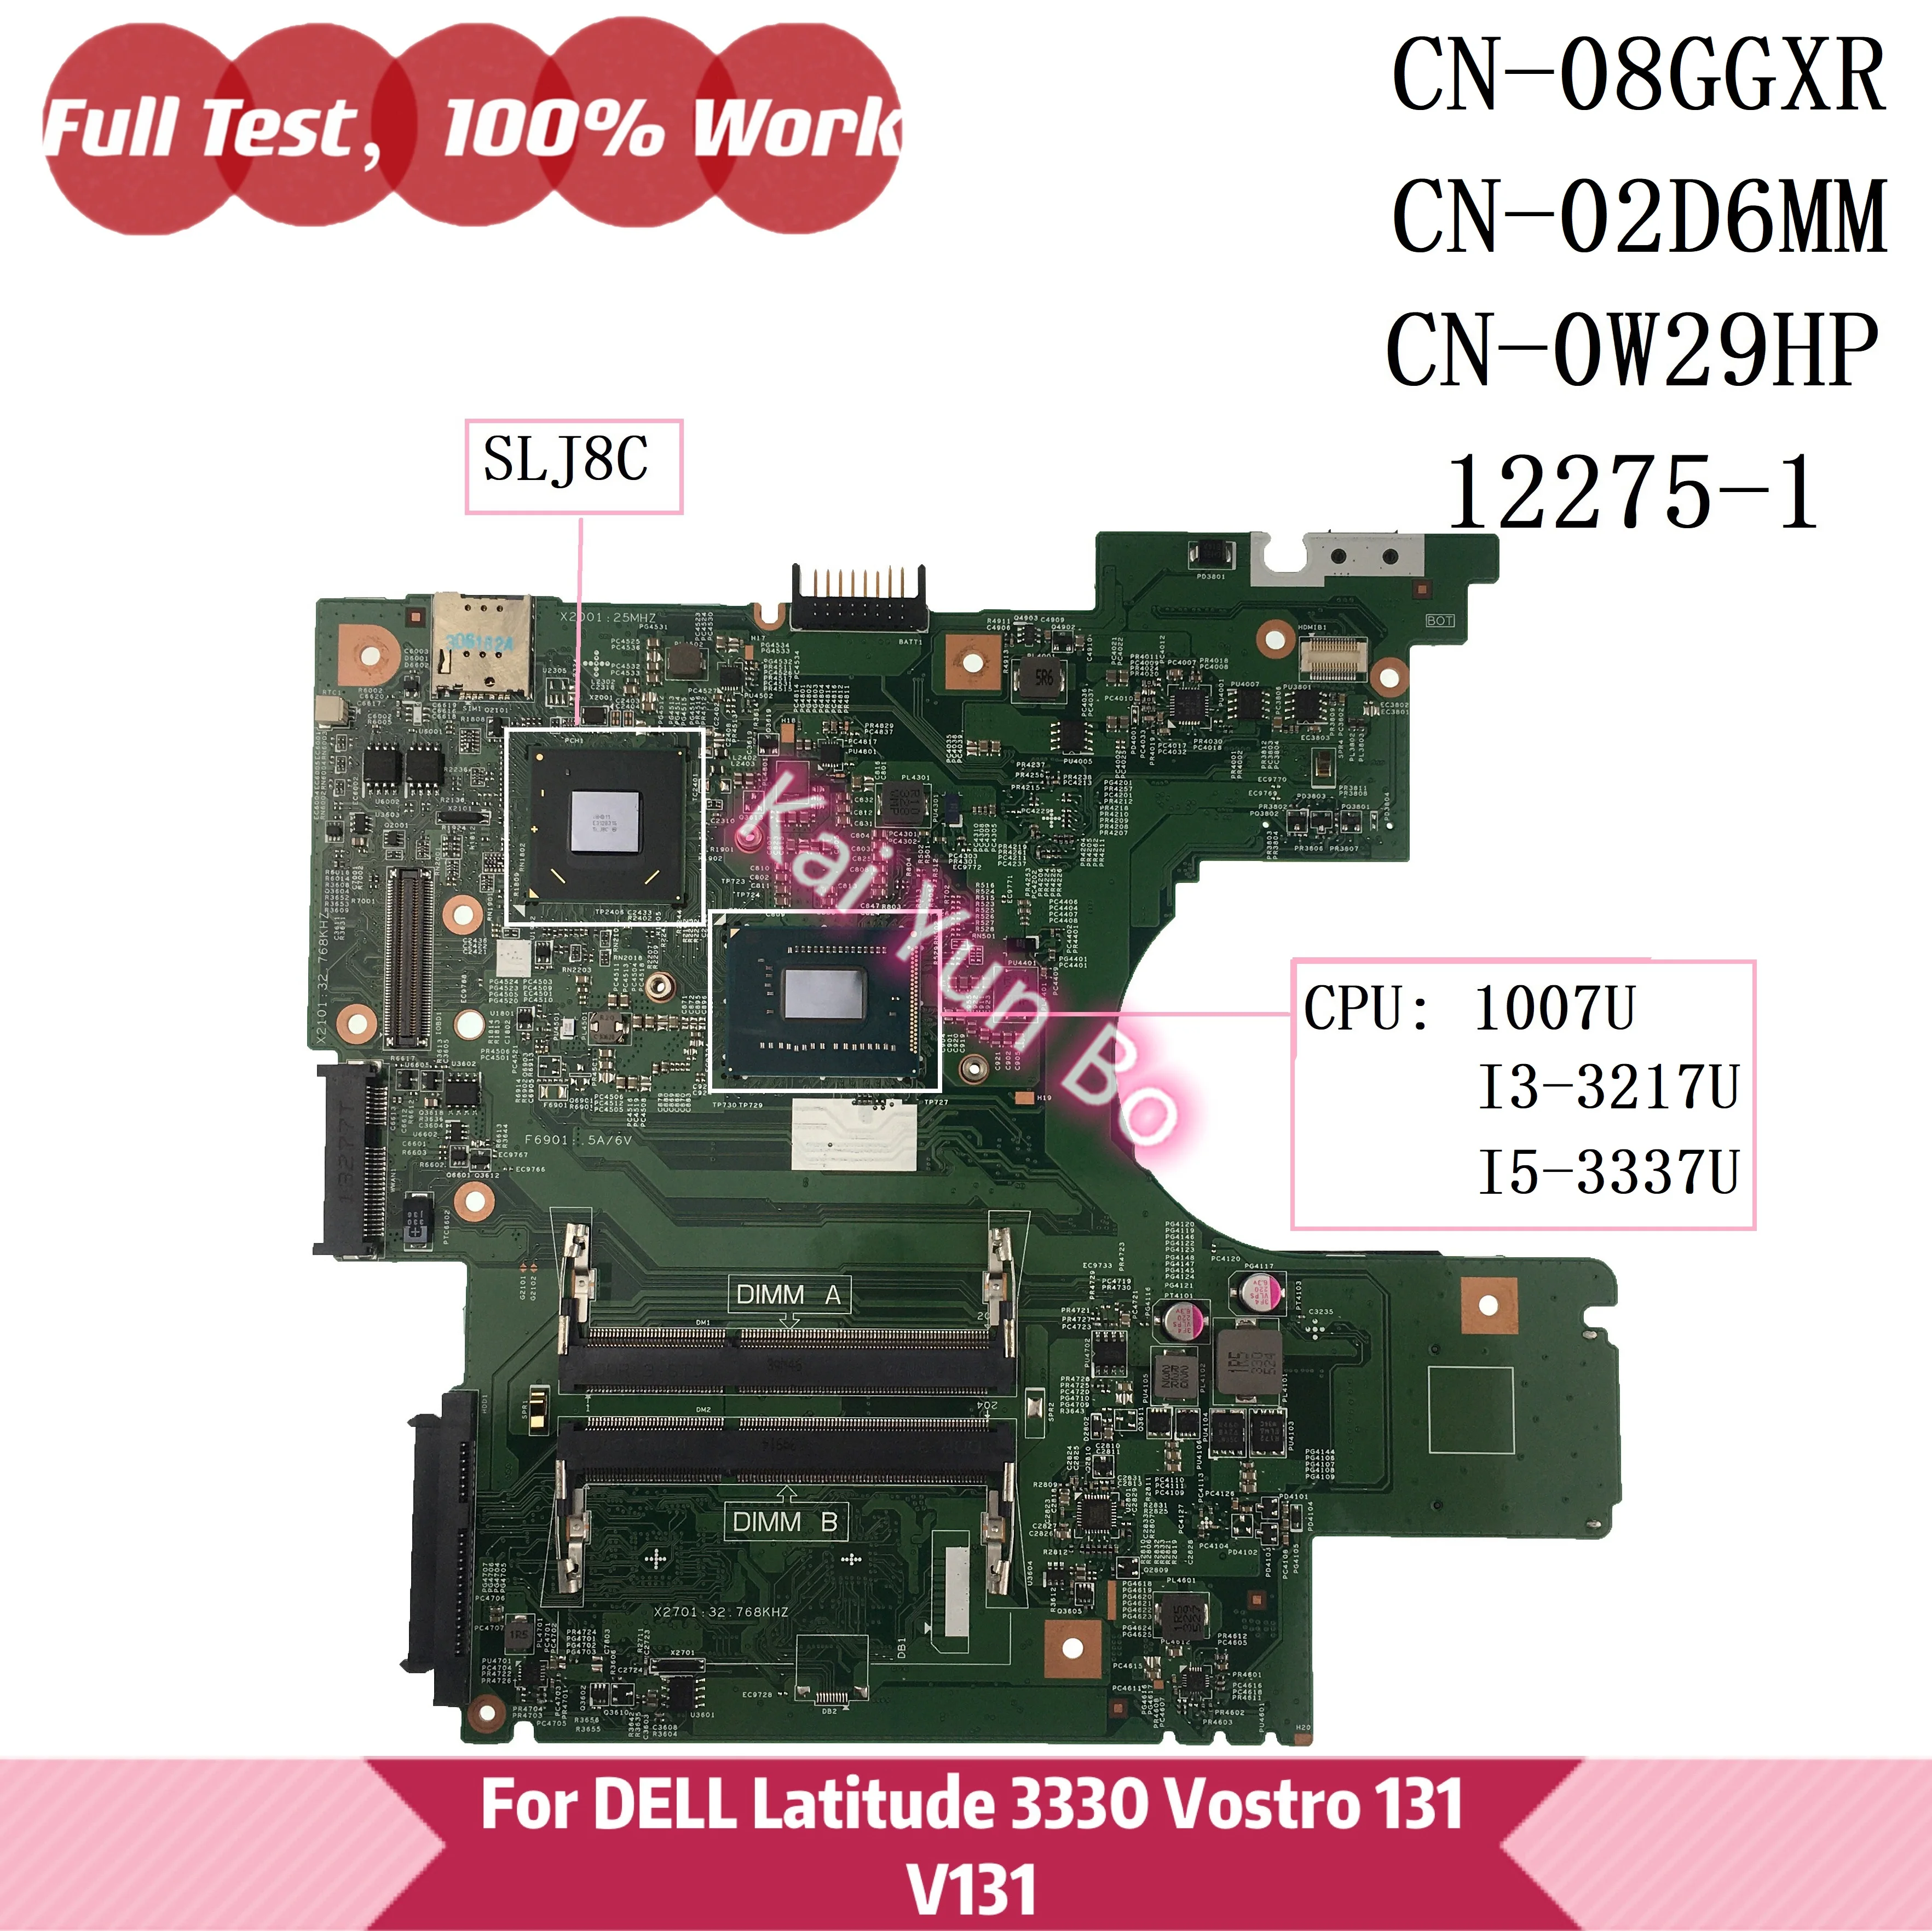 עבור Dell Latitude 3330 Vostro 131 V131 מחשב נייד לוח אם 08GGXR 8GGXR CN-0W29HP W29HP 0W29HP 02D6MM 2D6MM 12275-1 W 1007U i3 i5 - 0